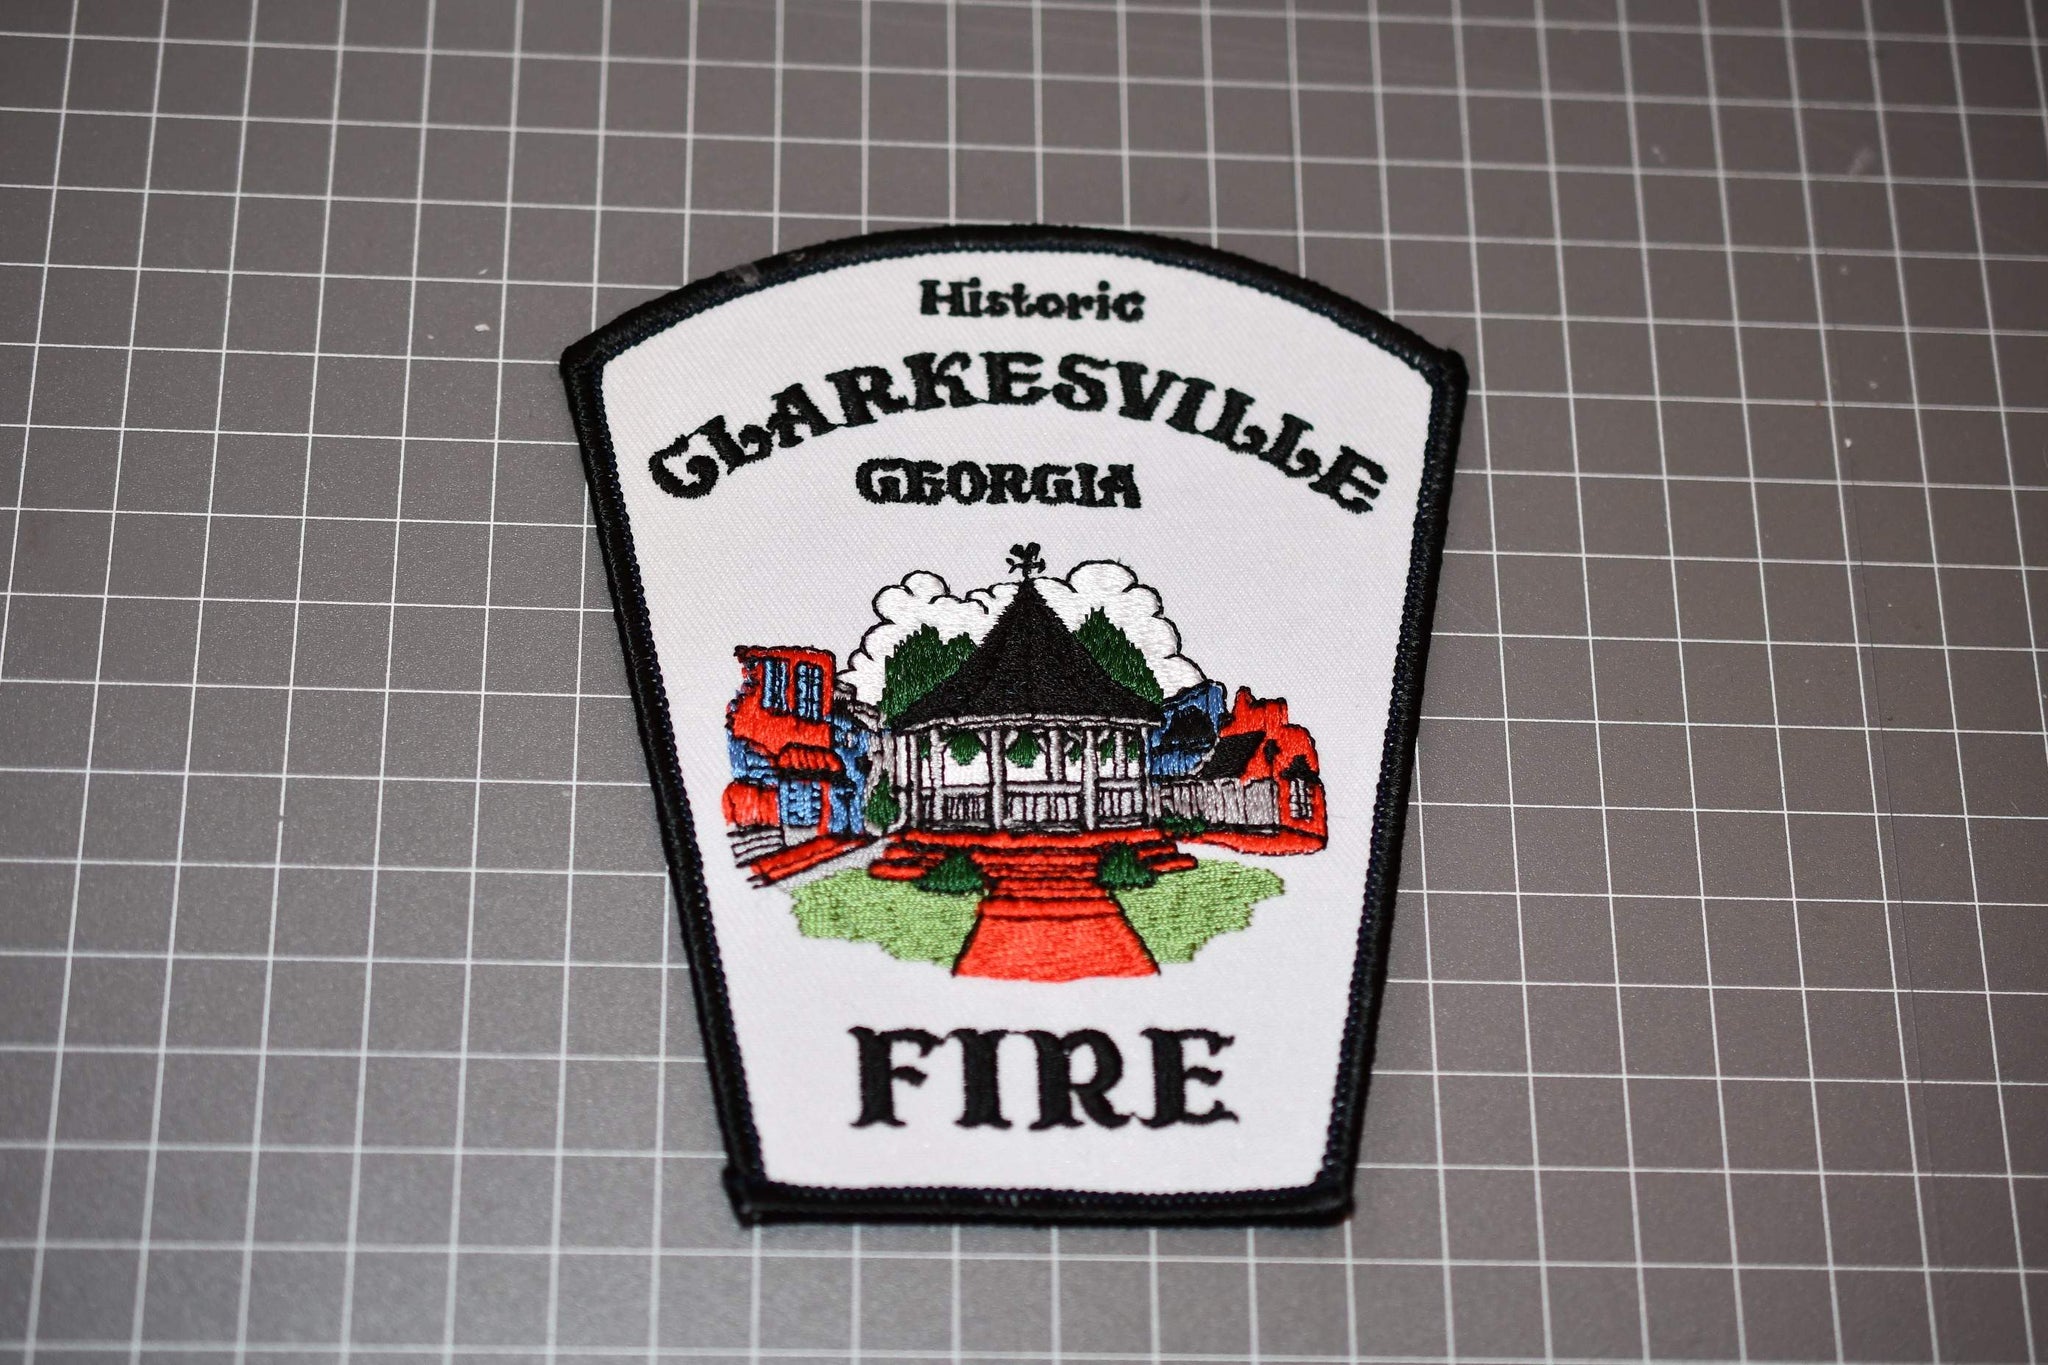 Clarkesville Georgia Fire Department Patch (U.S. Fire Patches)